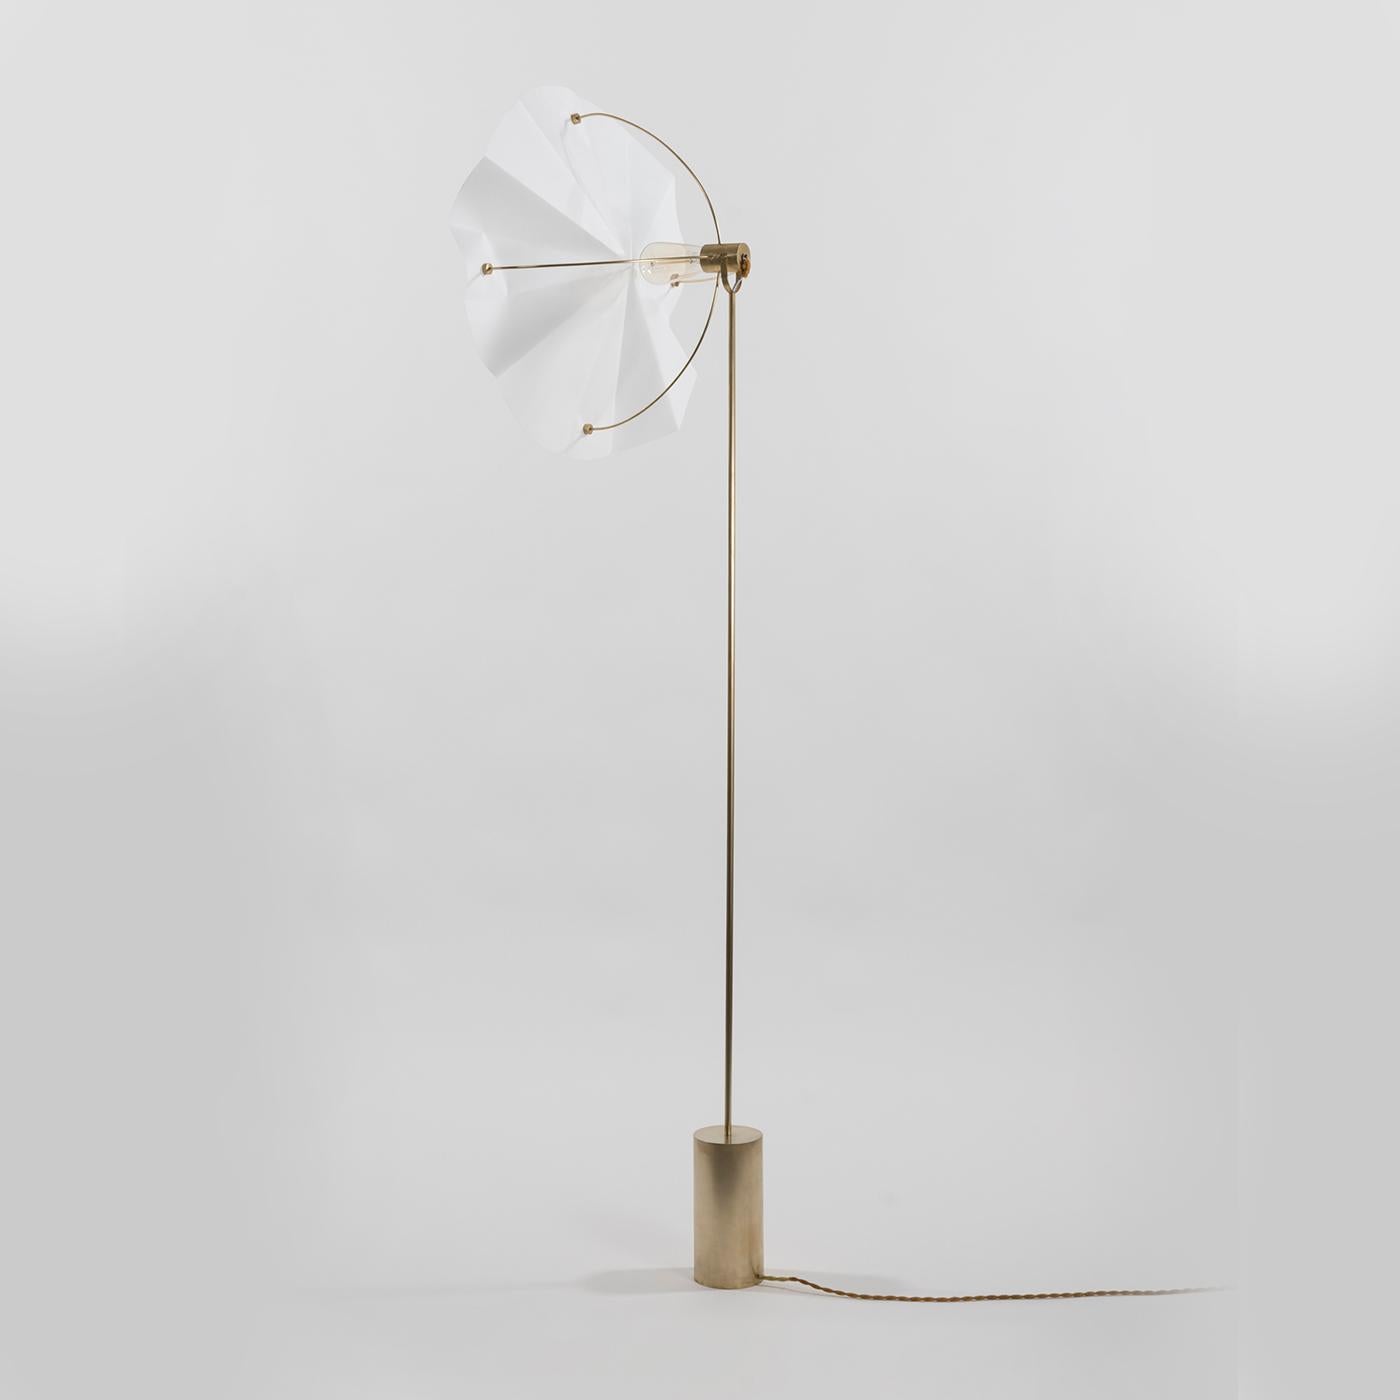 Italian Philtrum Floor Lamp by Astrid Luglio